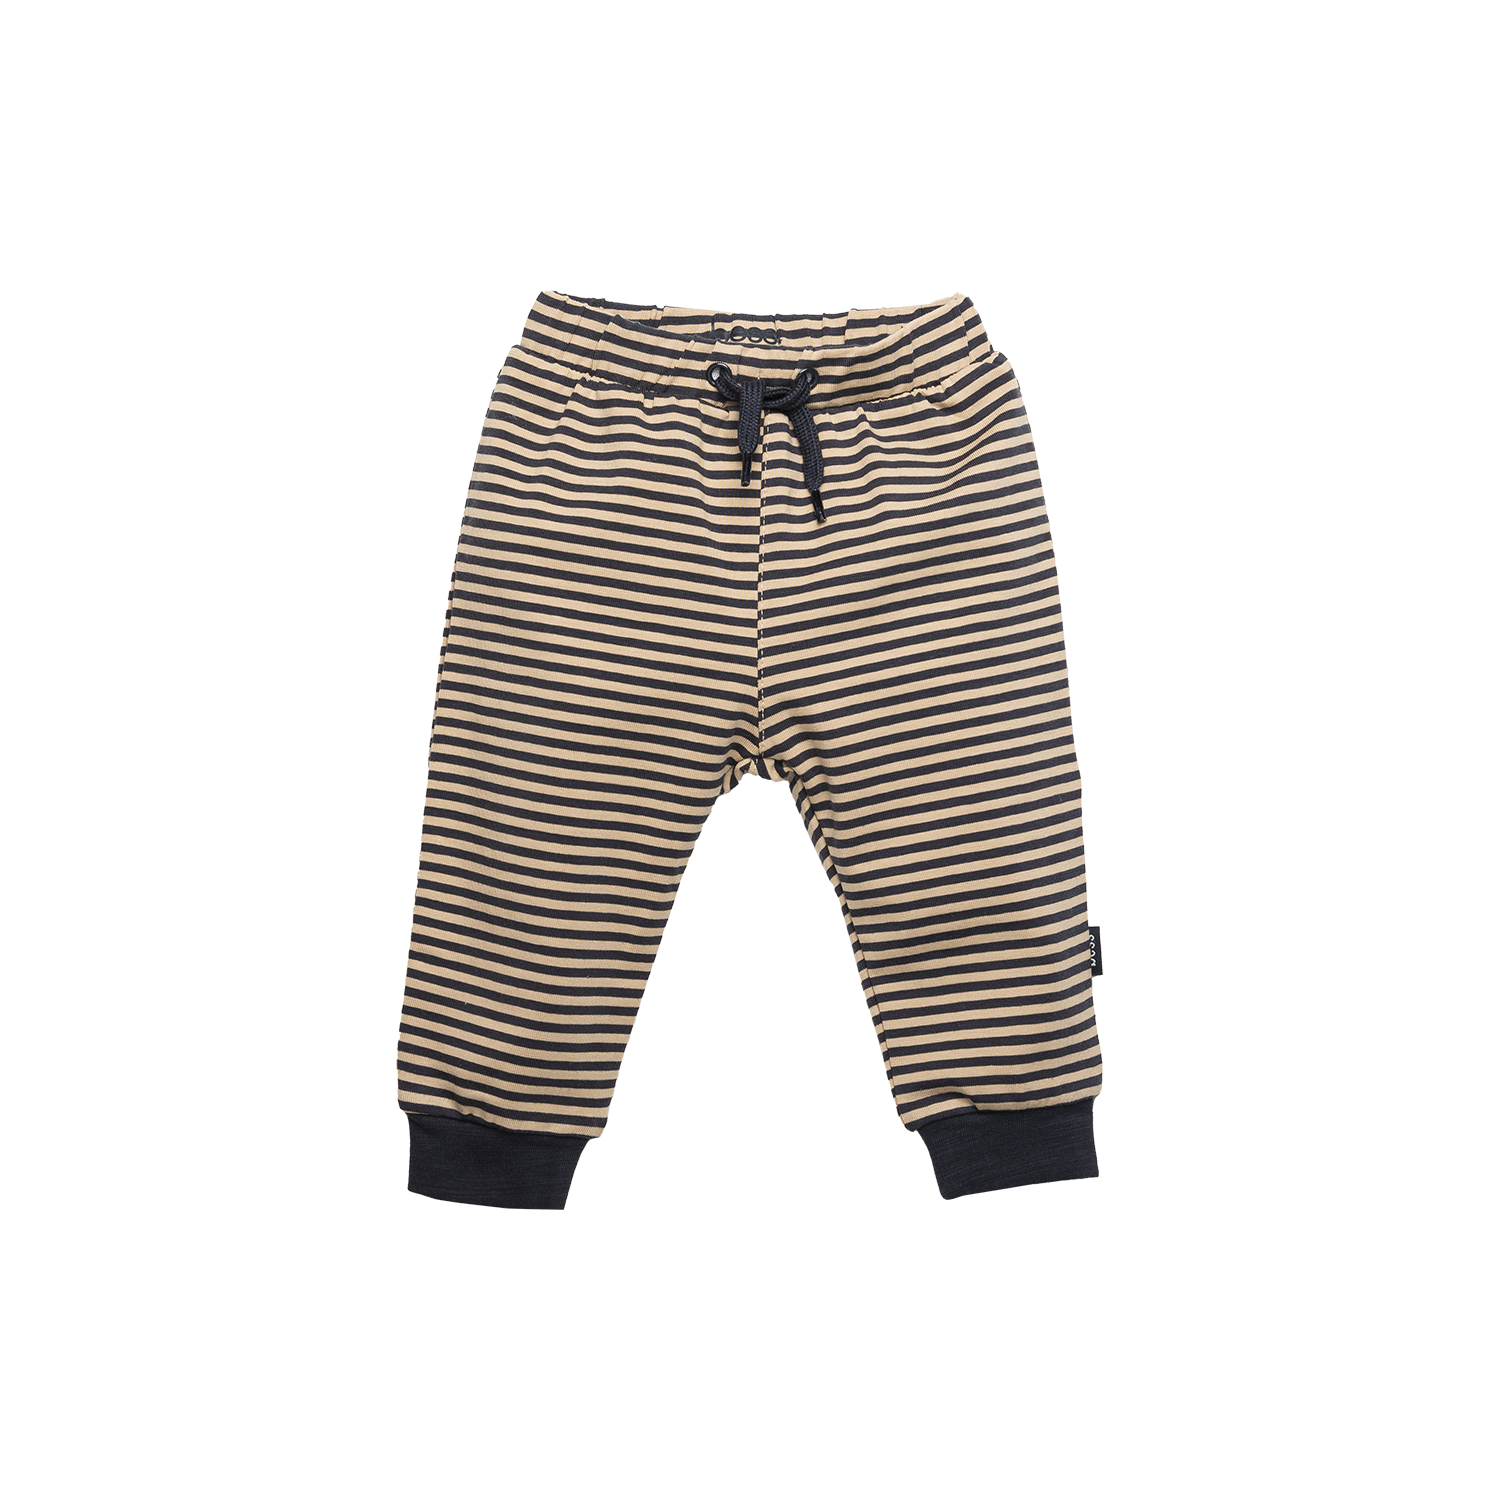 Jongens Pants Striped van B.E.S.S. in de kleur Sand in maat 68.